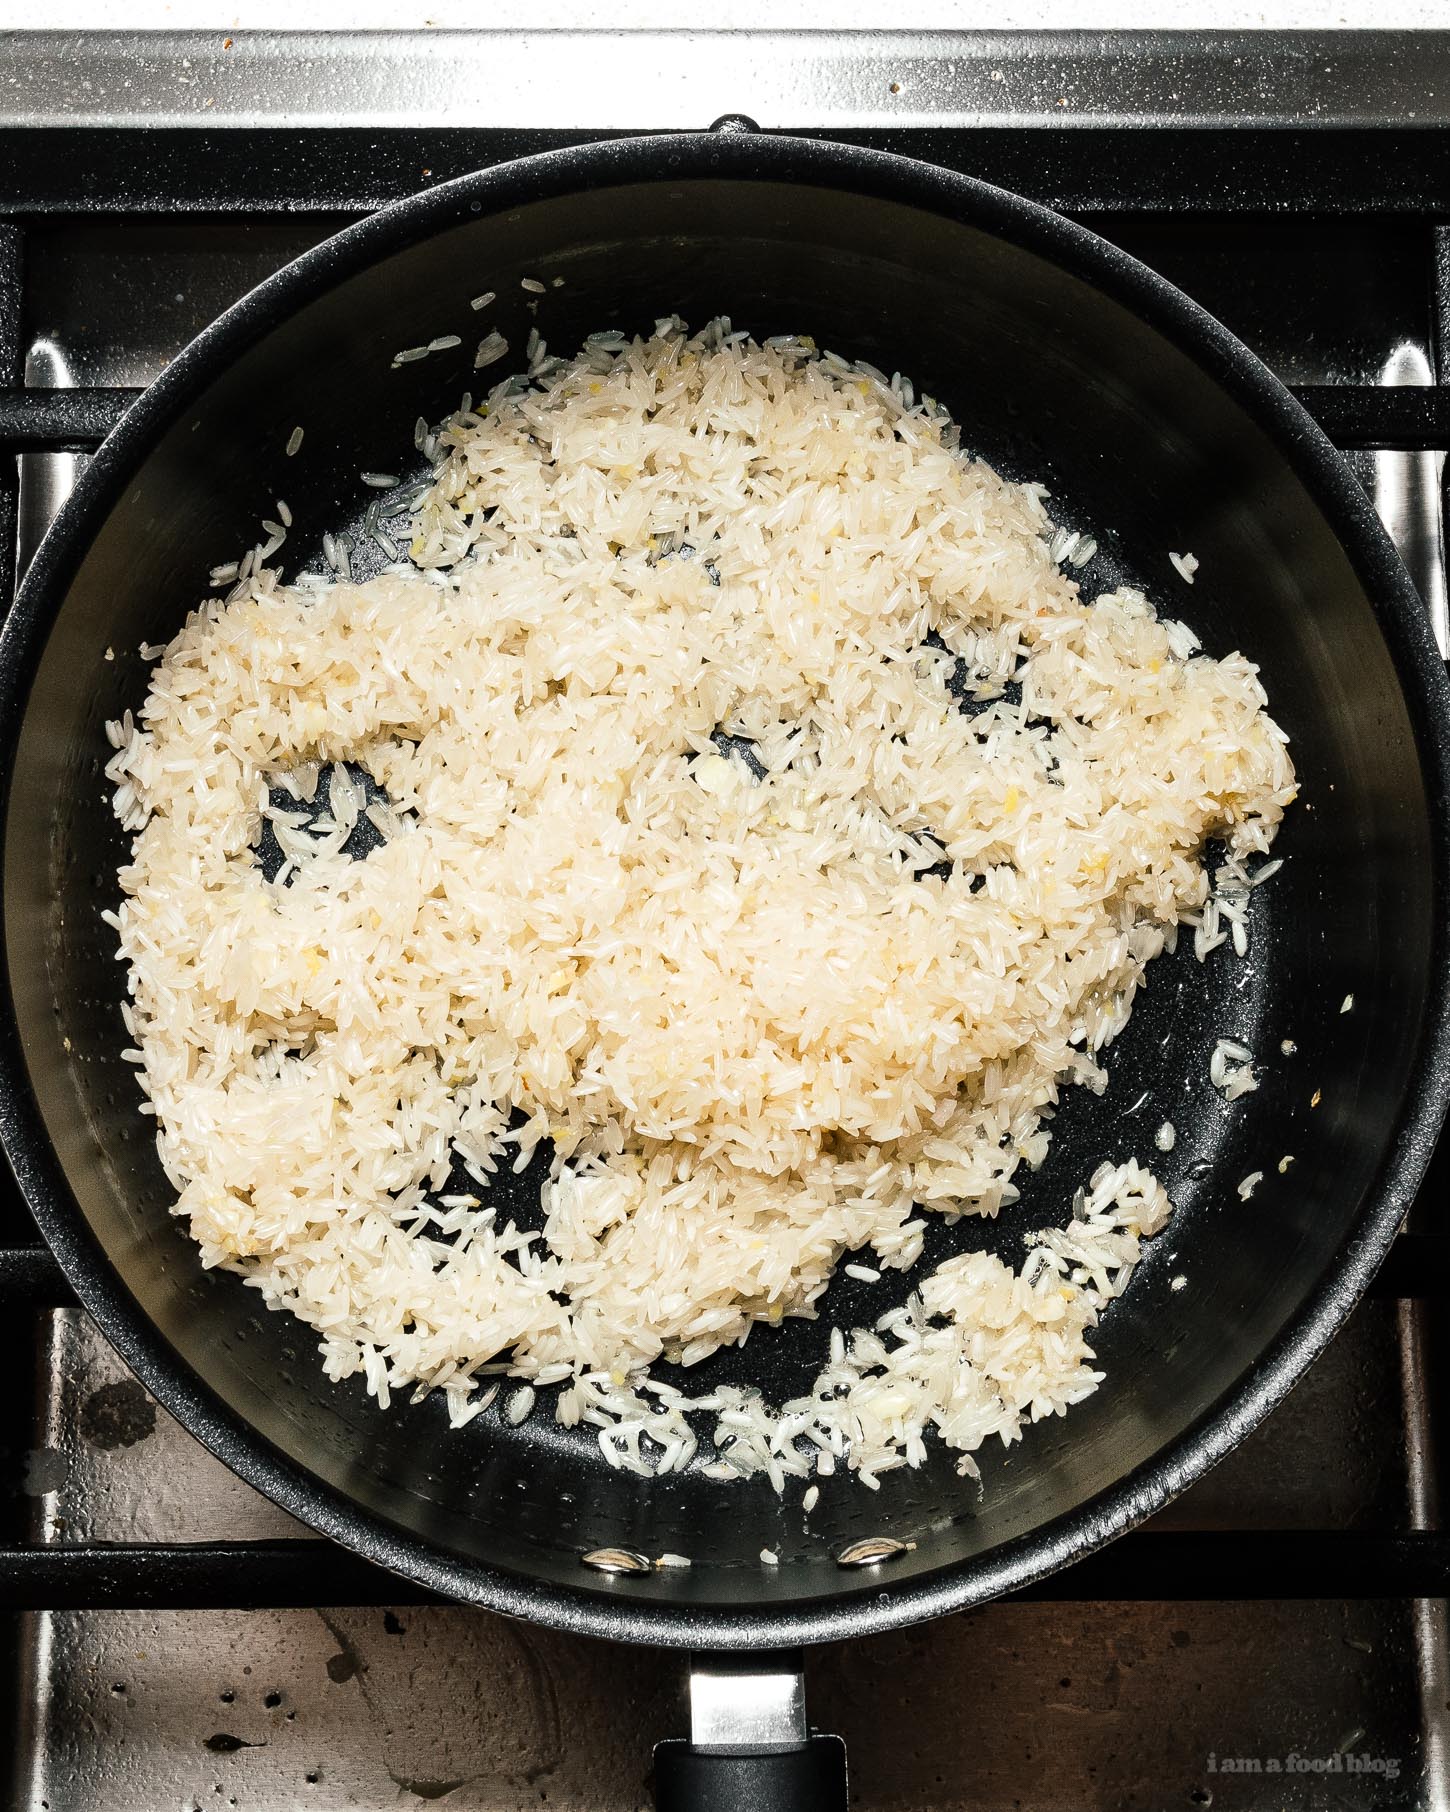 Trong chảo hoặc nồi có nắp, đun nóng mỡ gà.&nbsp;Thêm gừng, tỏi và hẹ, khuấy đều cho dậy mùi thơm rồi trút gạo vào rang đến khi thấy từng hạt gạo bóng.